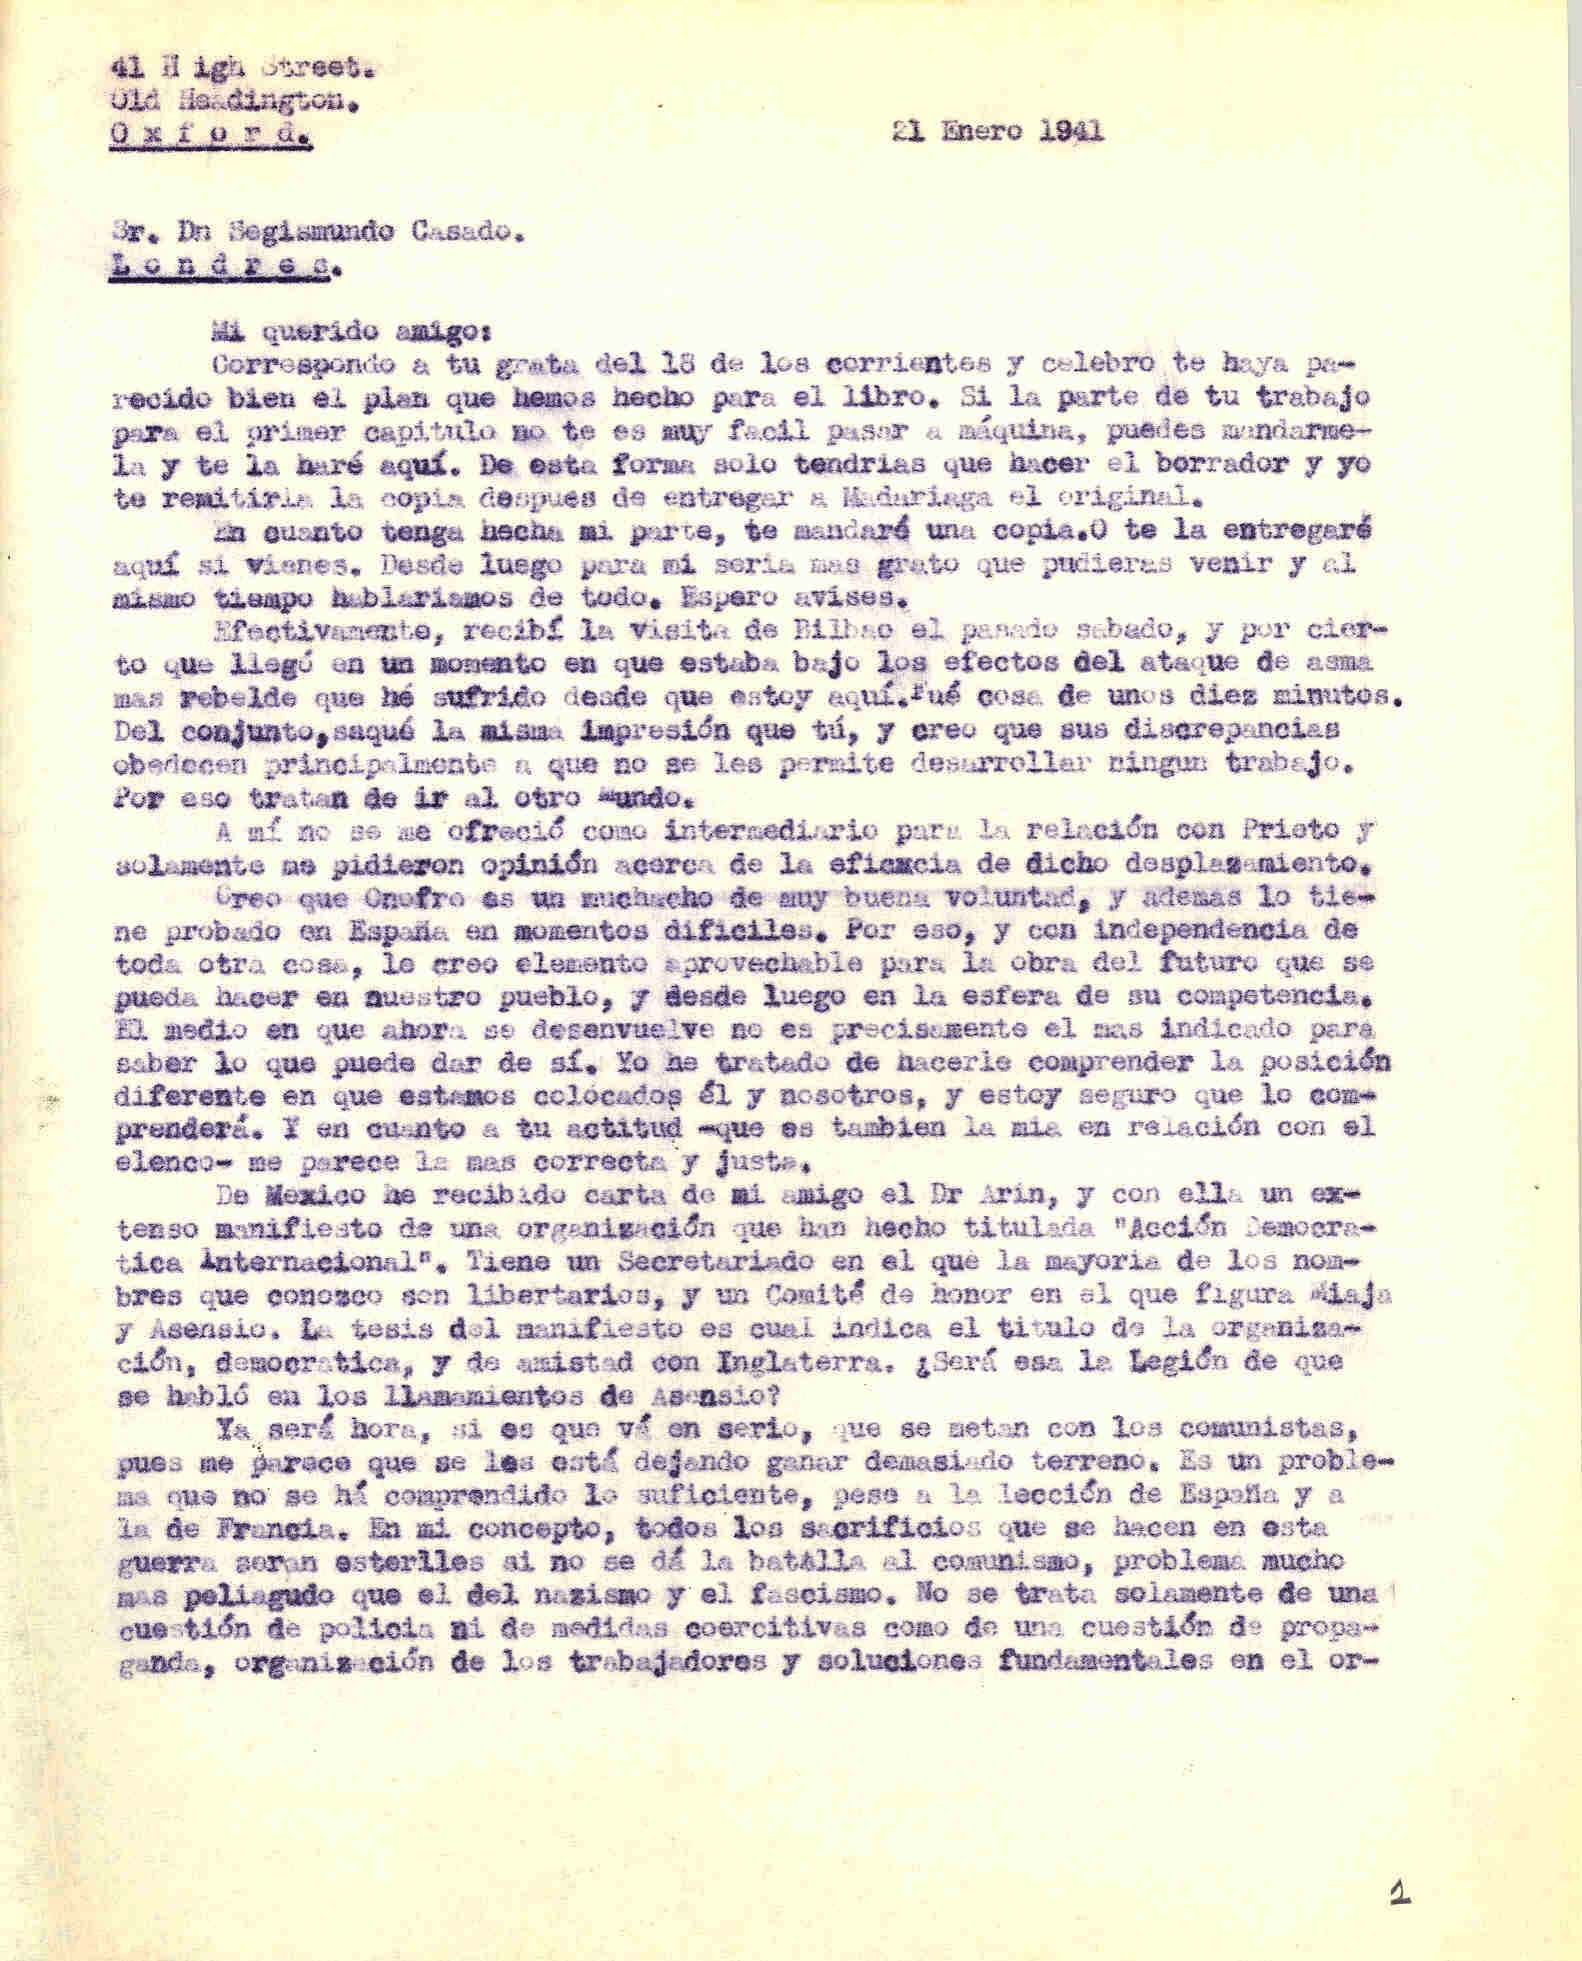 Carta a Segismundo Casado hablando de un manifiesto enviado por Arín desde México, publicado por Acción Democrática y del proyecto del libro con Madariaga y Casado.